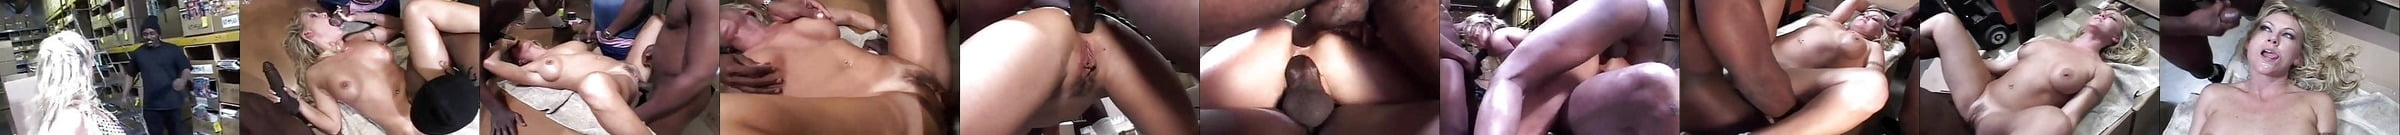 Interracial Gangbang Creampie Free Free Xxx Interracial Porn Video